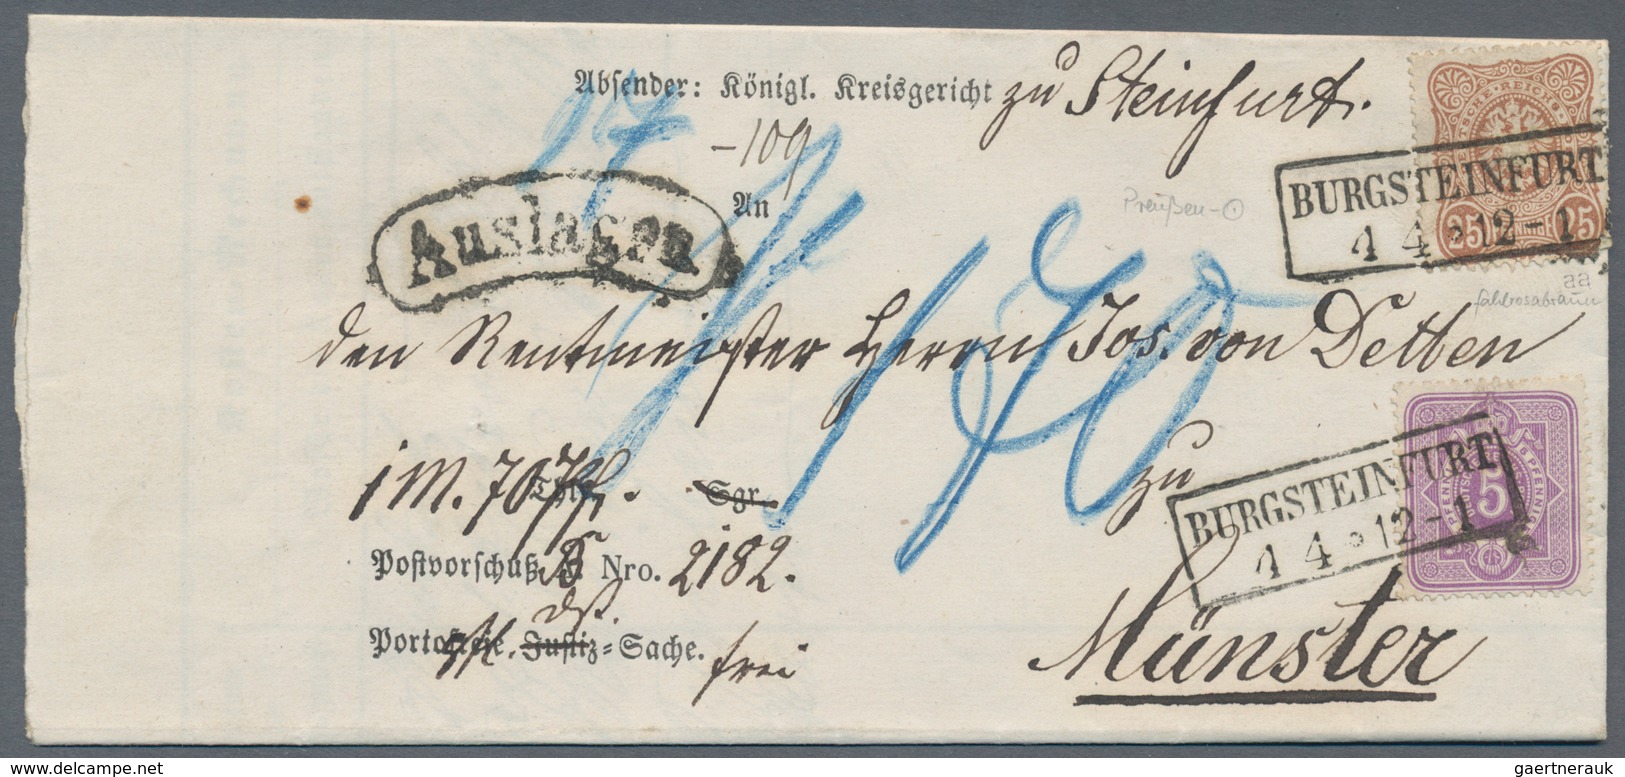 Deutsches Reich: 1872/1920, vielseitiger Bestand von ca. 330 Briefen und Karten, dabei einige nette